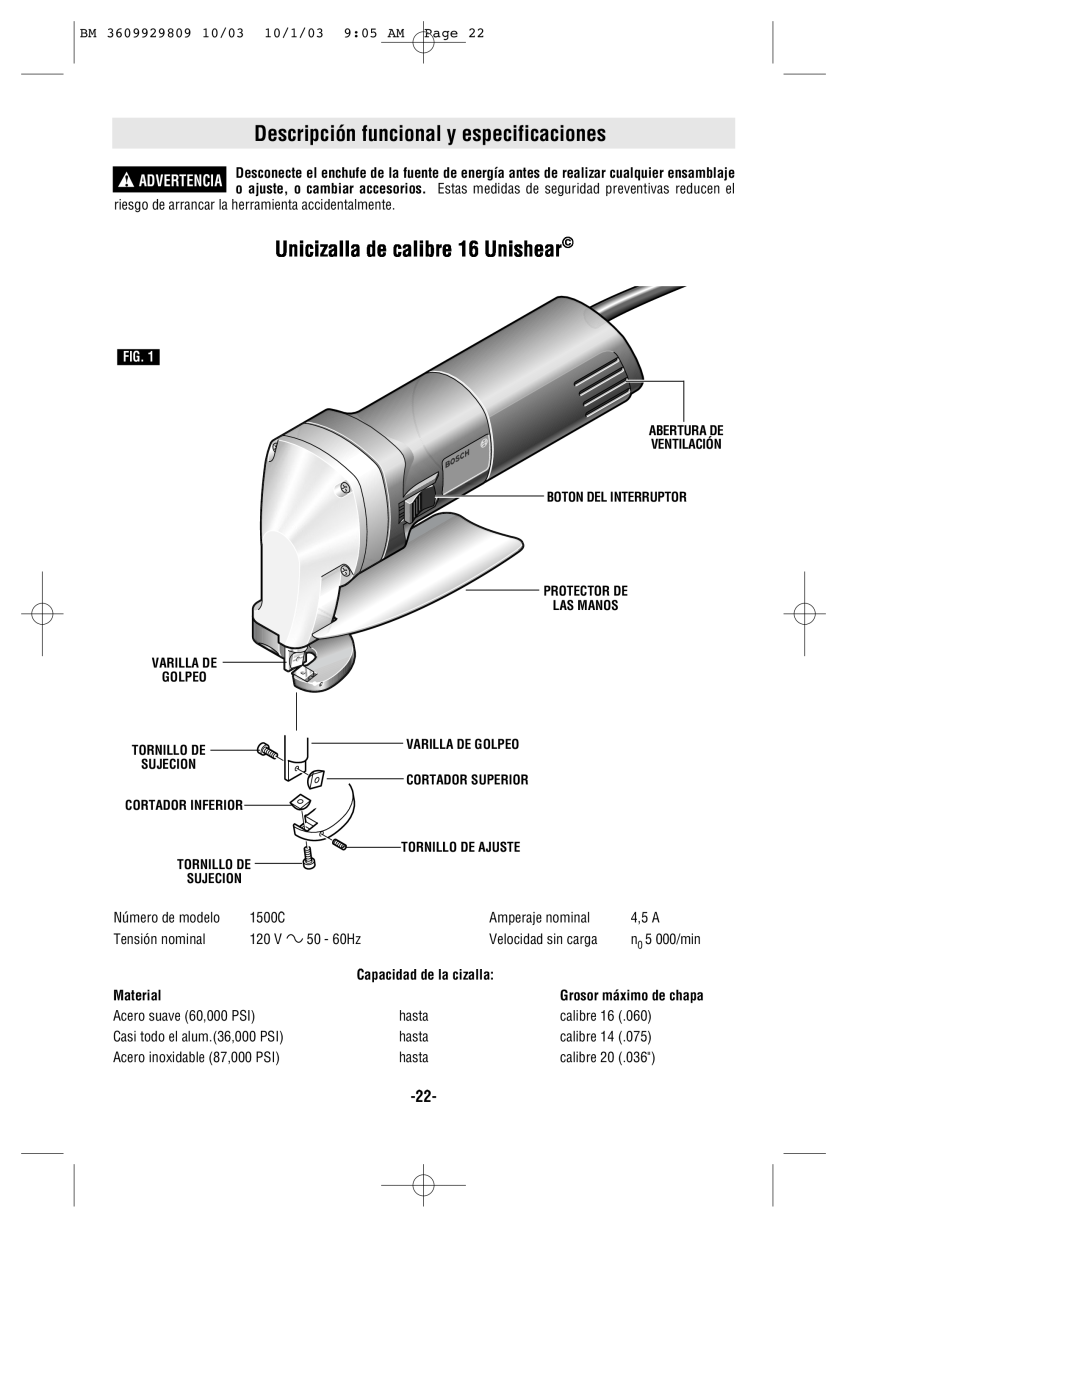 Bosch Power Tools 1500C manual Descripción funcional y especificaciones, Unicizalla de calibre 16 Unishear, Material 